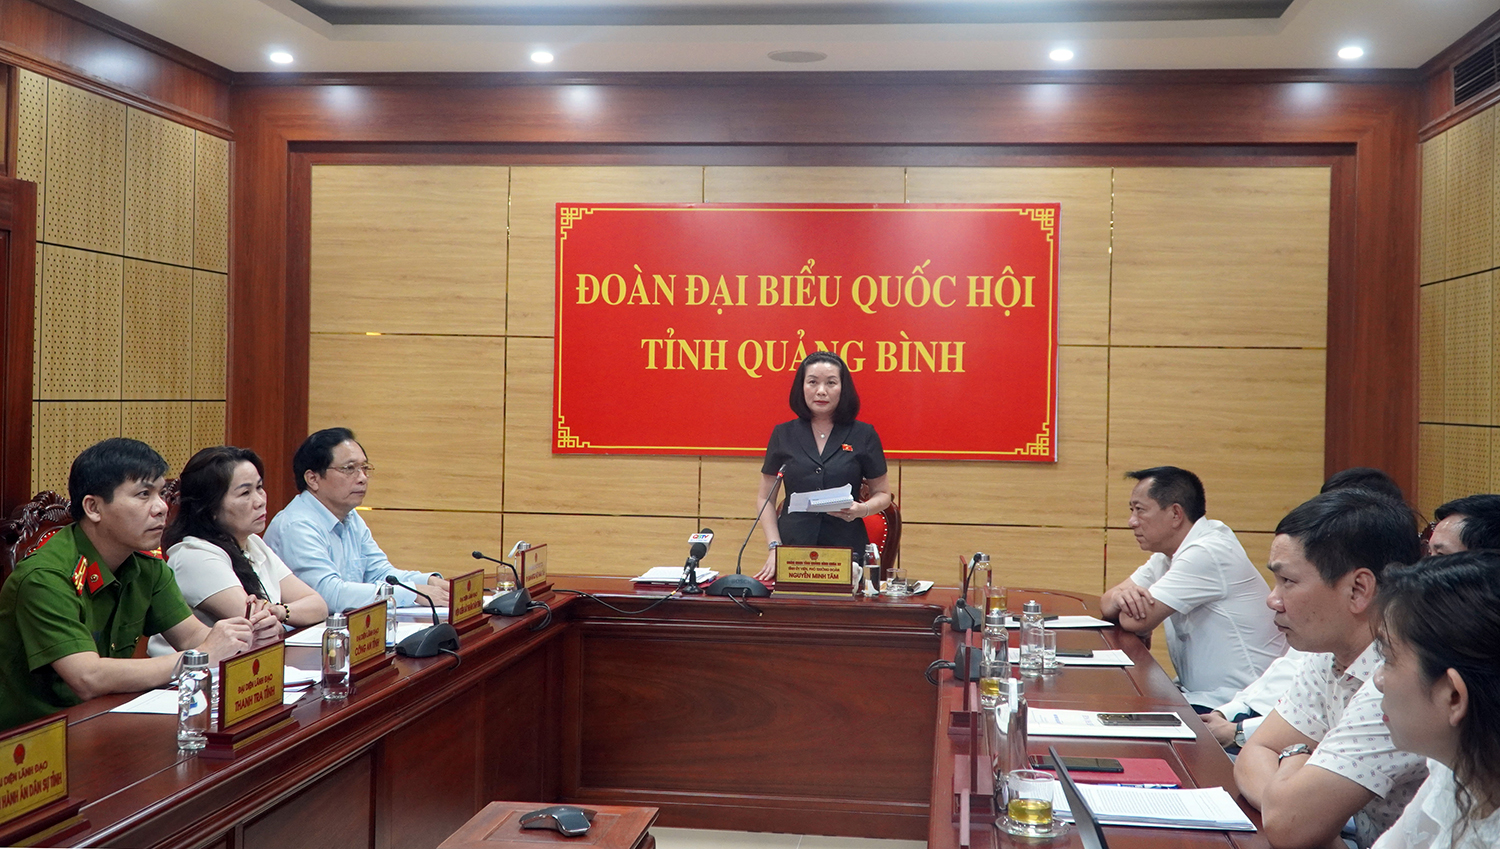 Toàn cảnh phiên chất vấn tại điểm cầu tỉnh Quảng Bình